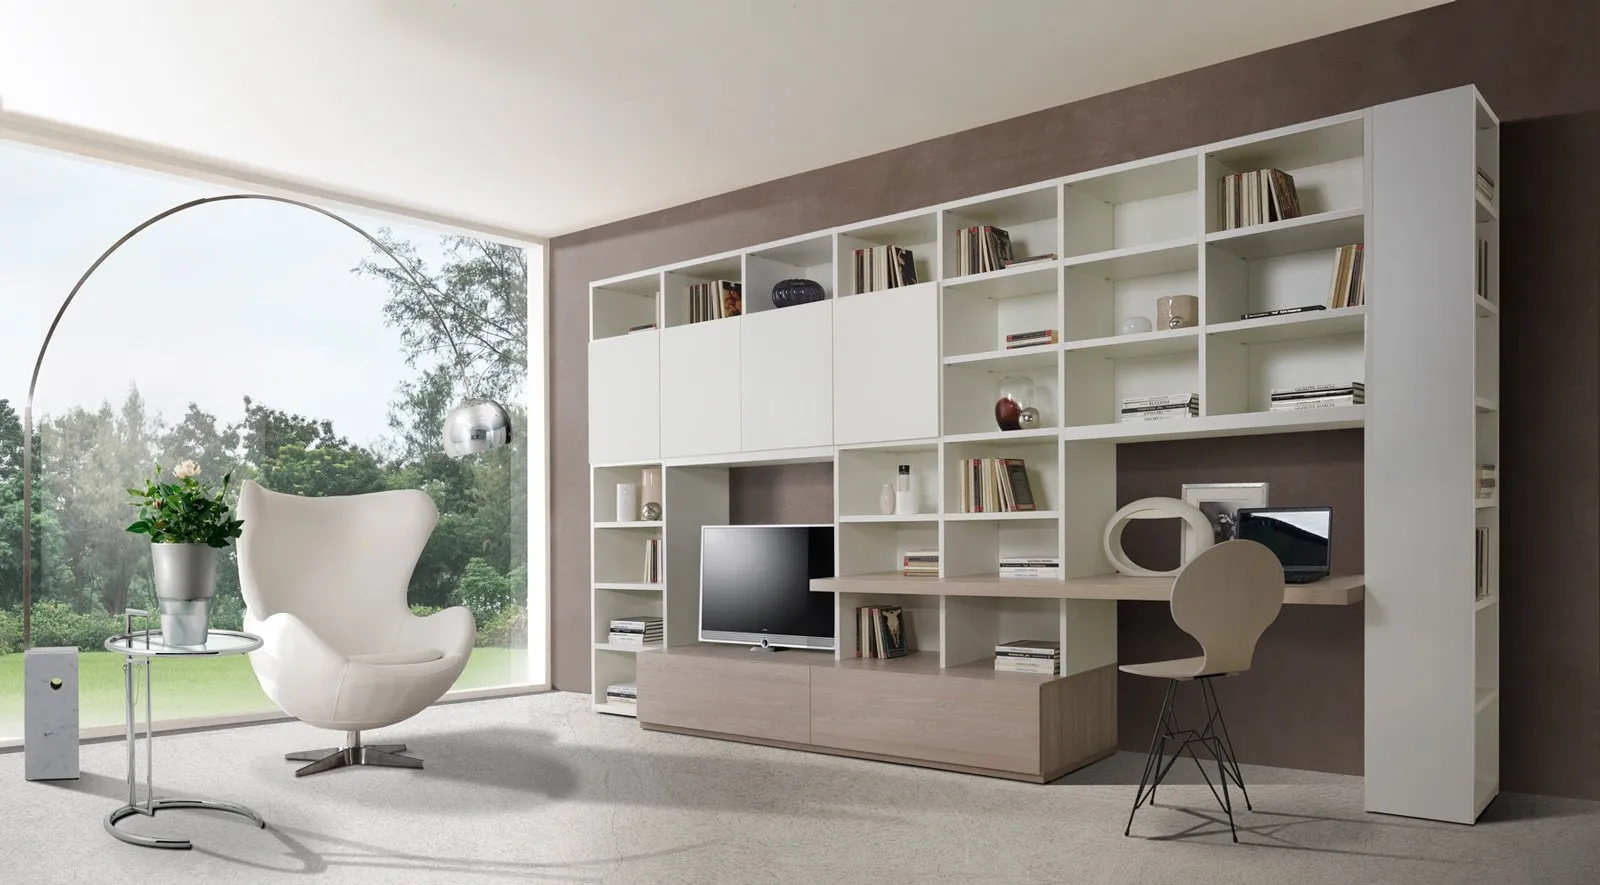 Mobili salotto moderni come arredare il living mobili for Immagini living moderni